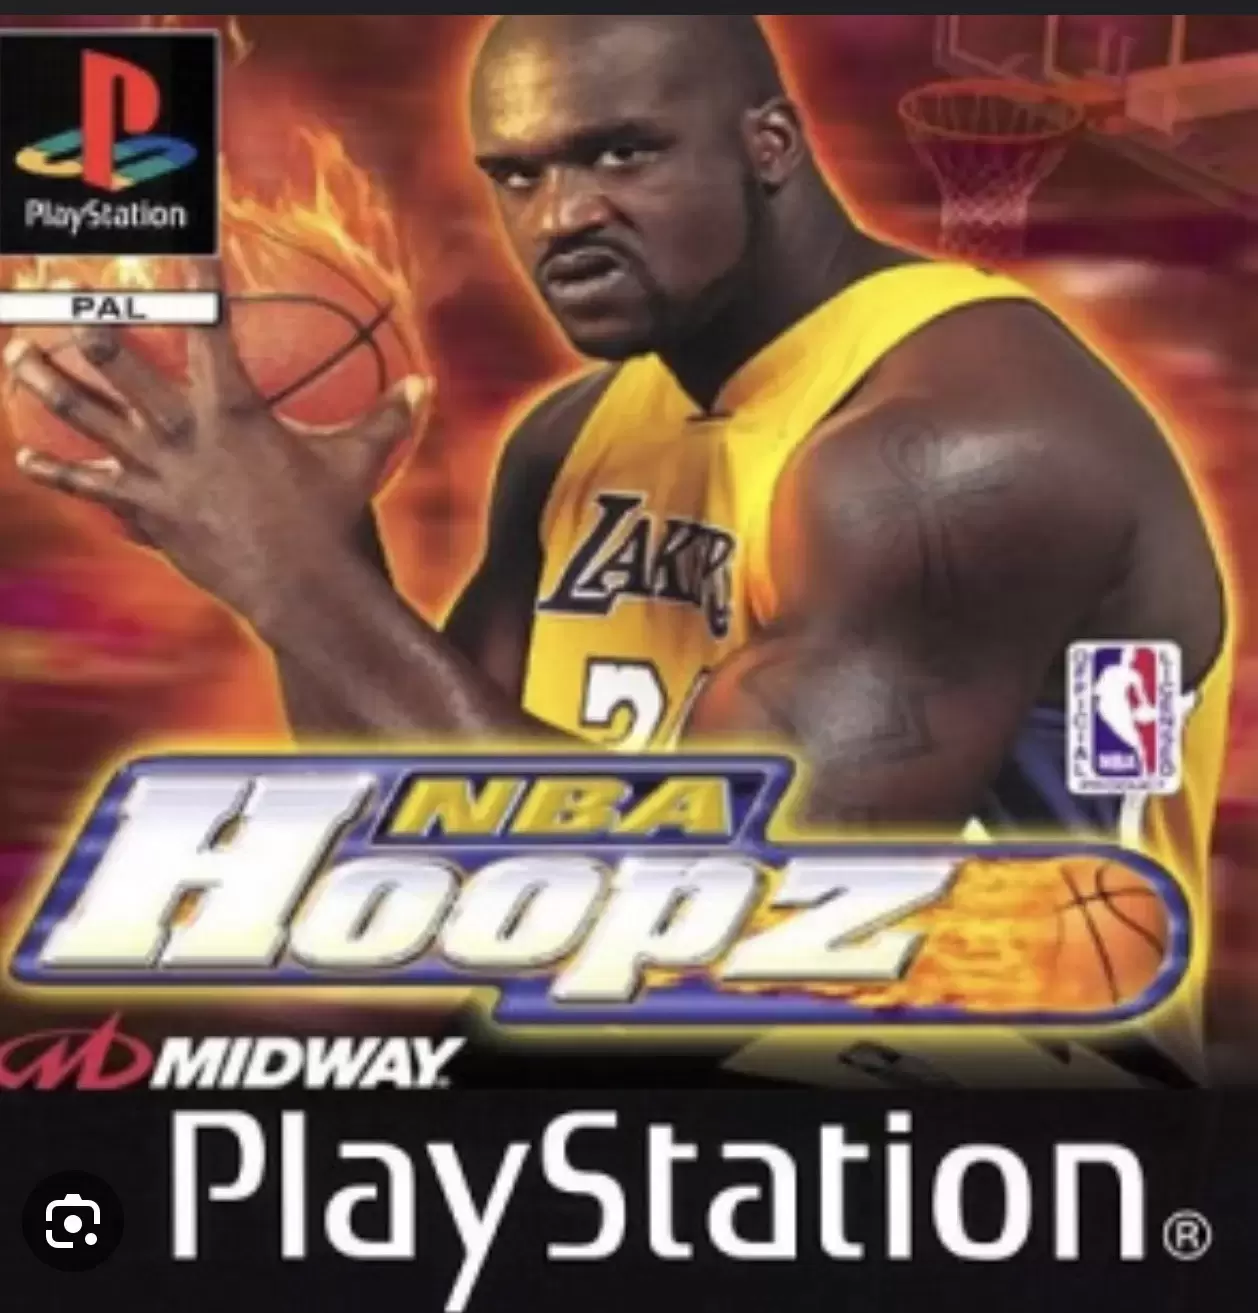 Playstation games - Nba Hoopz